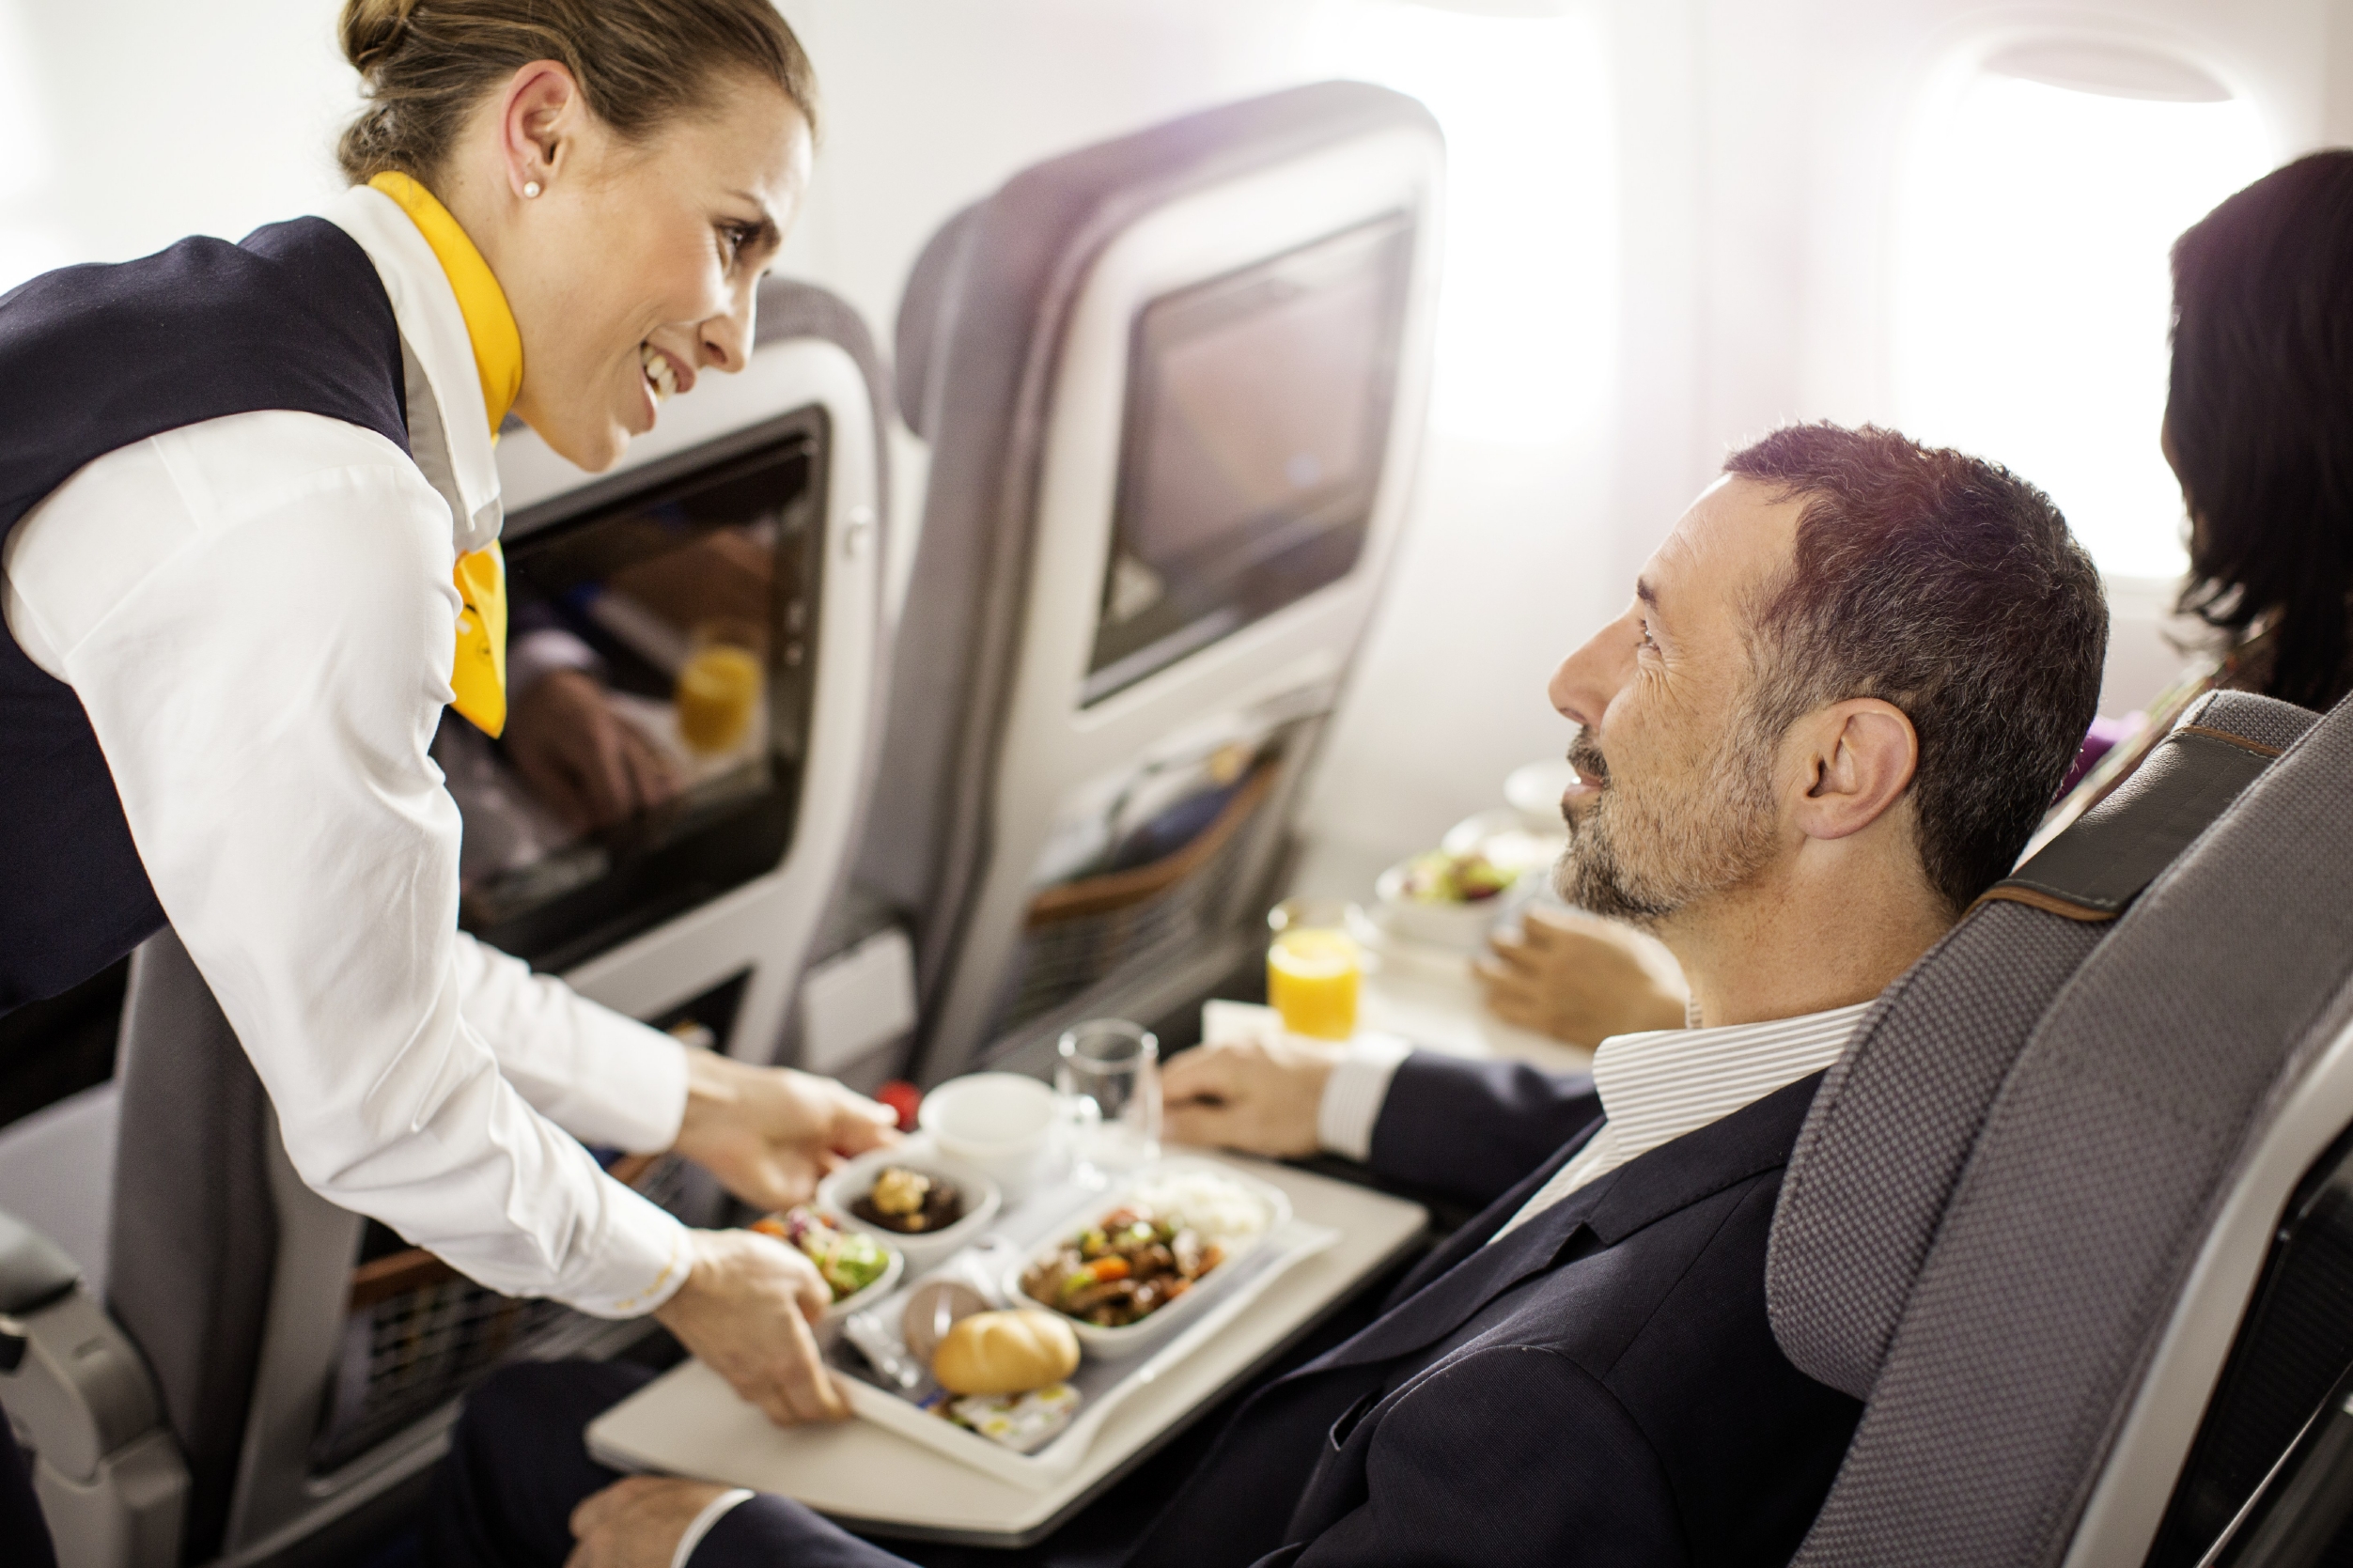 Обслуживание пассажиров на транспорте. Еда на борту самолета. Стюардесса с едой. Пассажиры на борту самолета. Самолет с пассажиром.